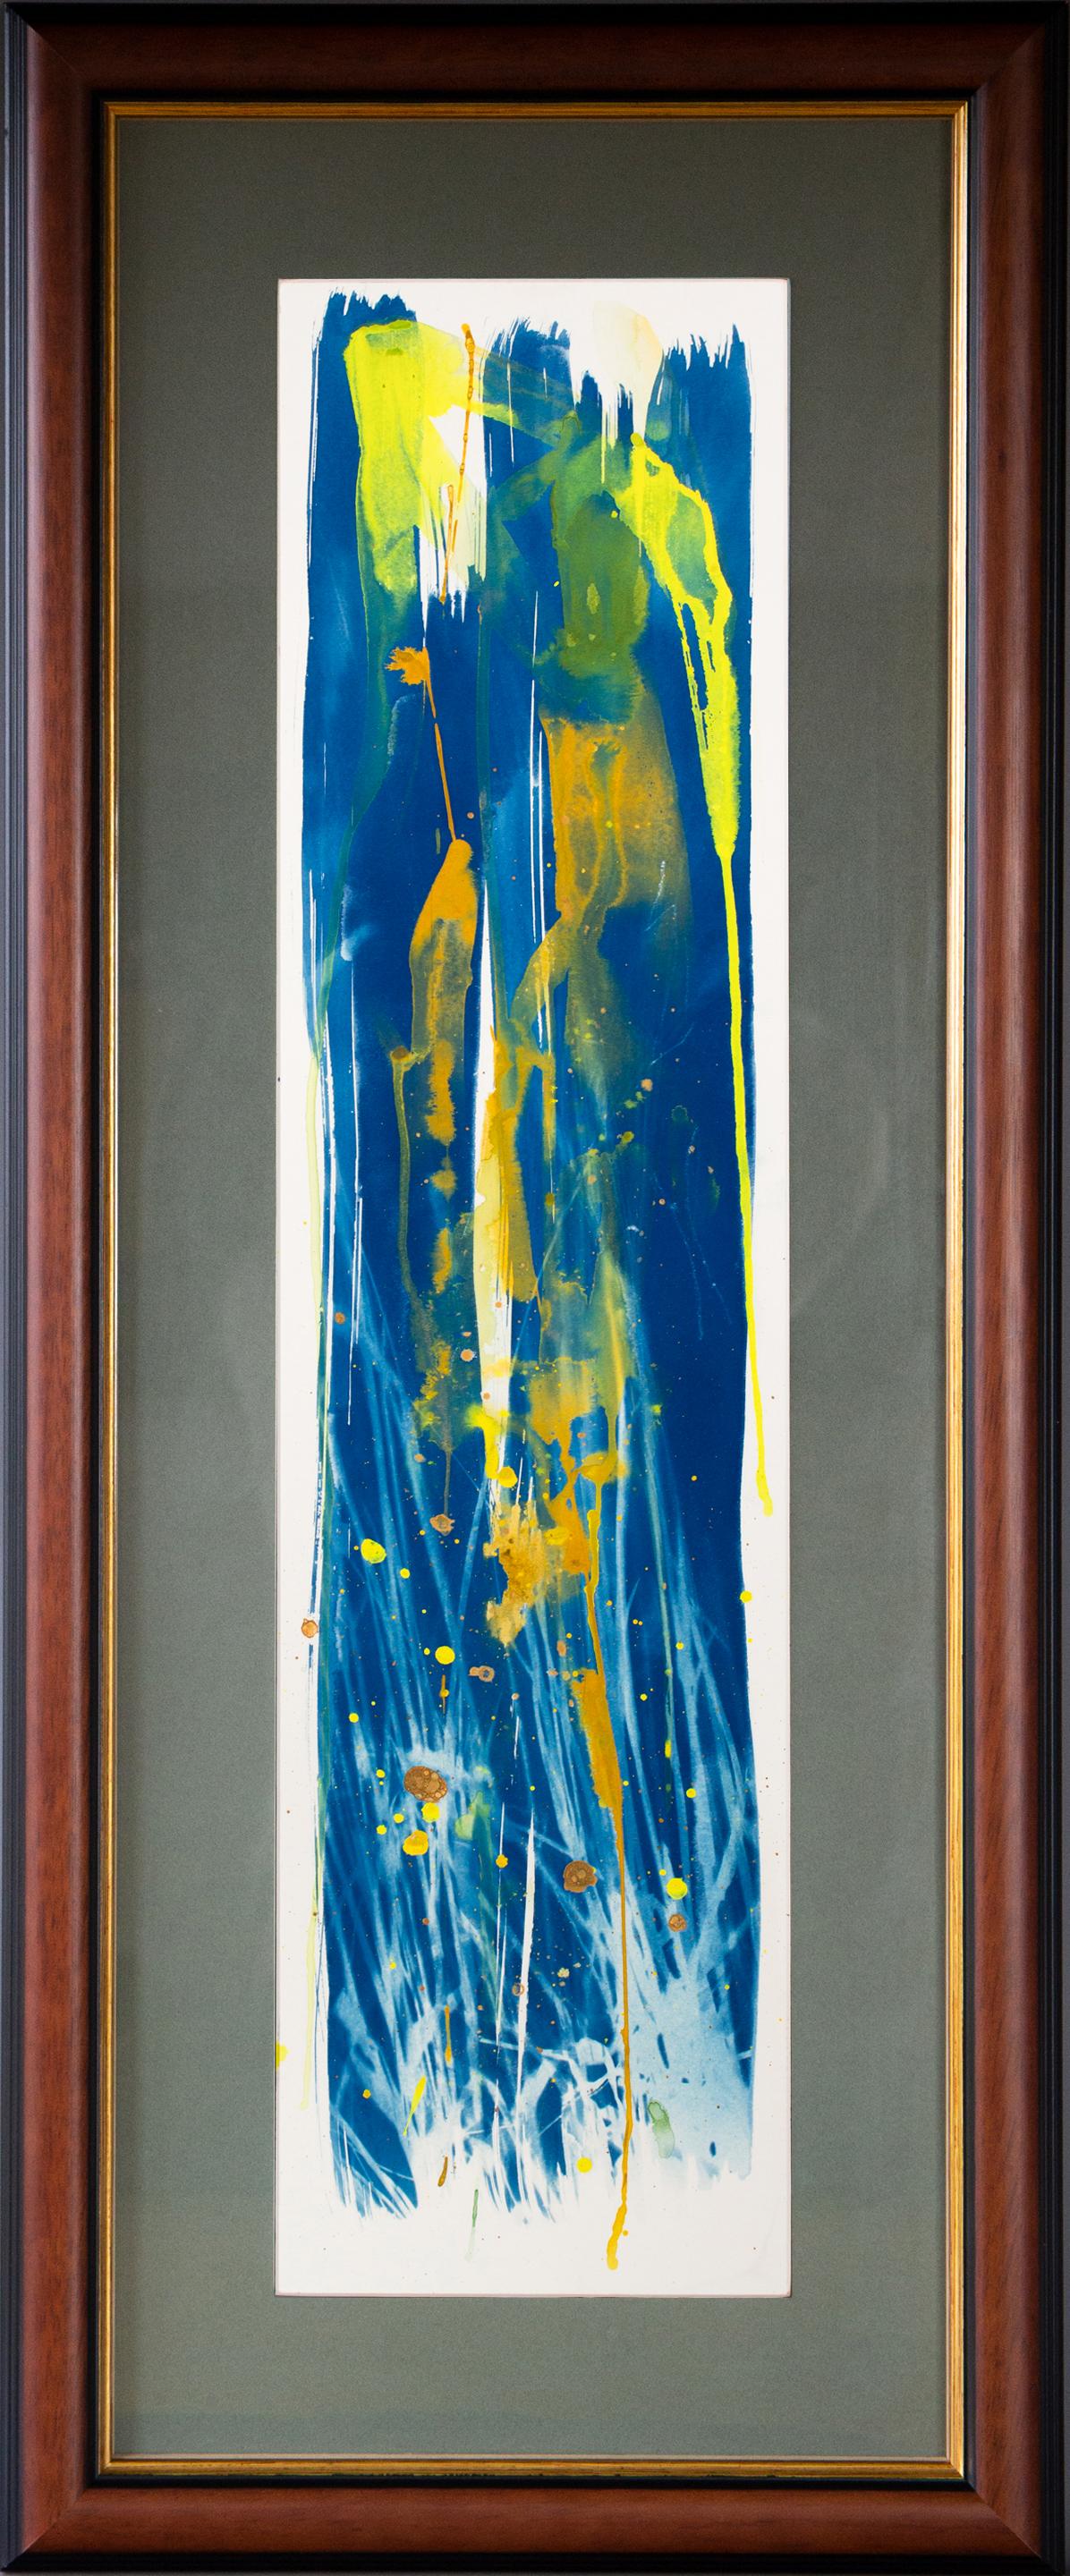 « Pollen and Swallows ». Peinture sur panneau de technique mixte, encadrée - Bleu Abstract Painting par Sophia Milligan